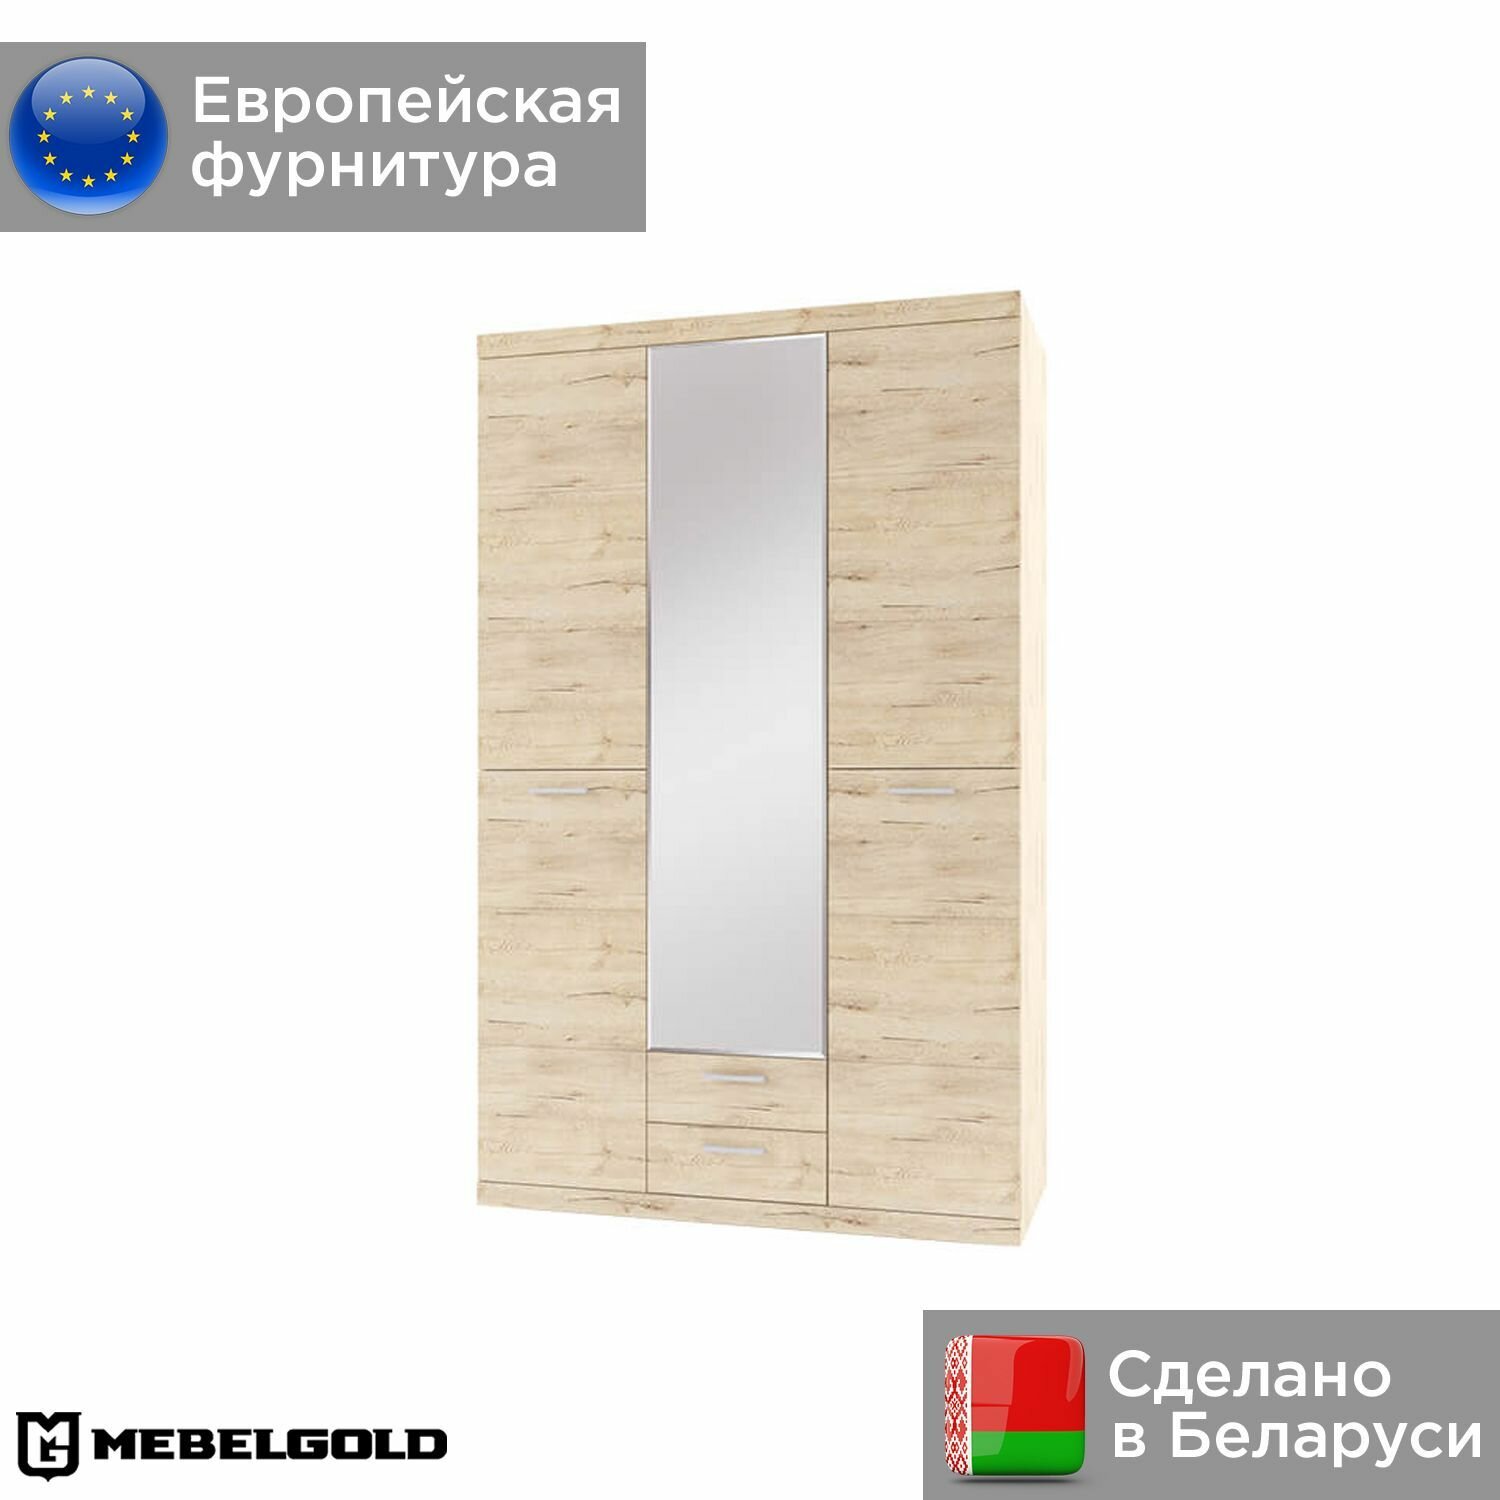 Оскар Шкаф 3-створчатый, с зеркалом, распашной, для одежды, в спальню, детскую, белорусский, 3D2S МебельГолд